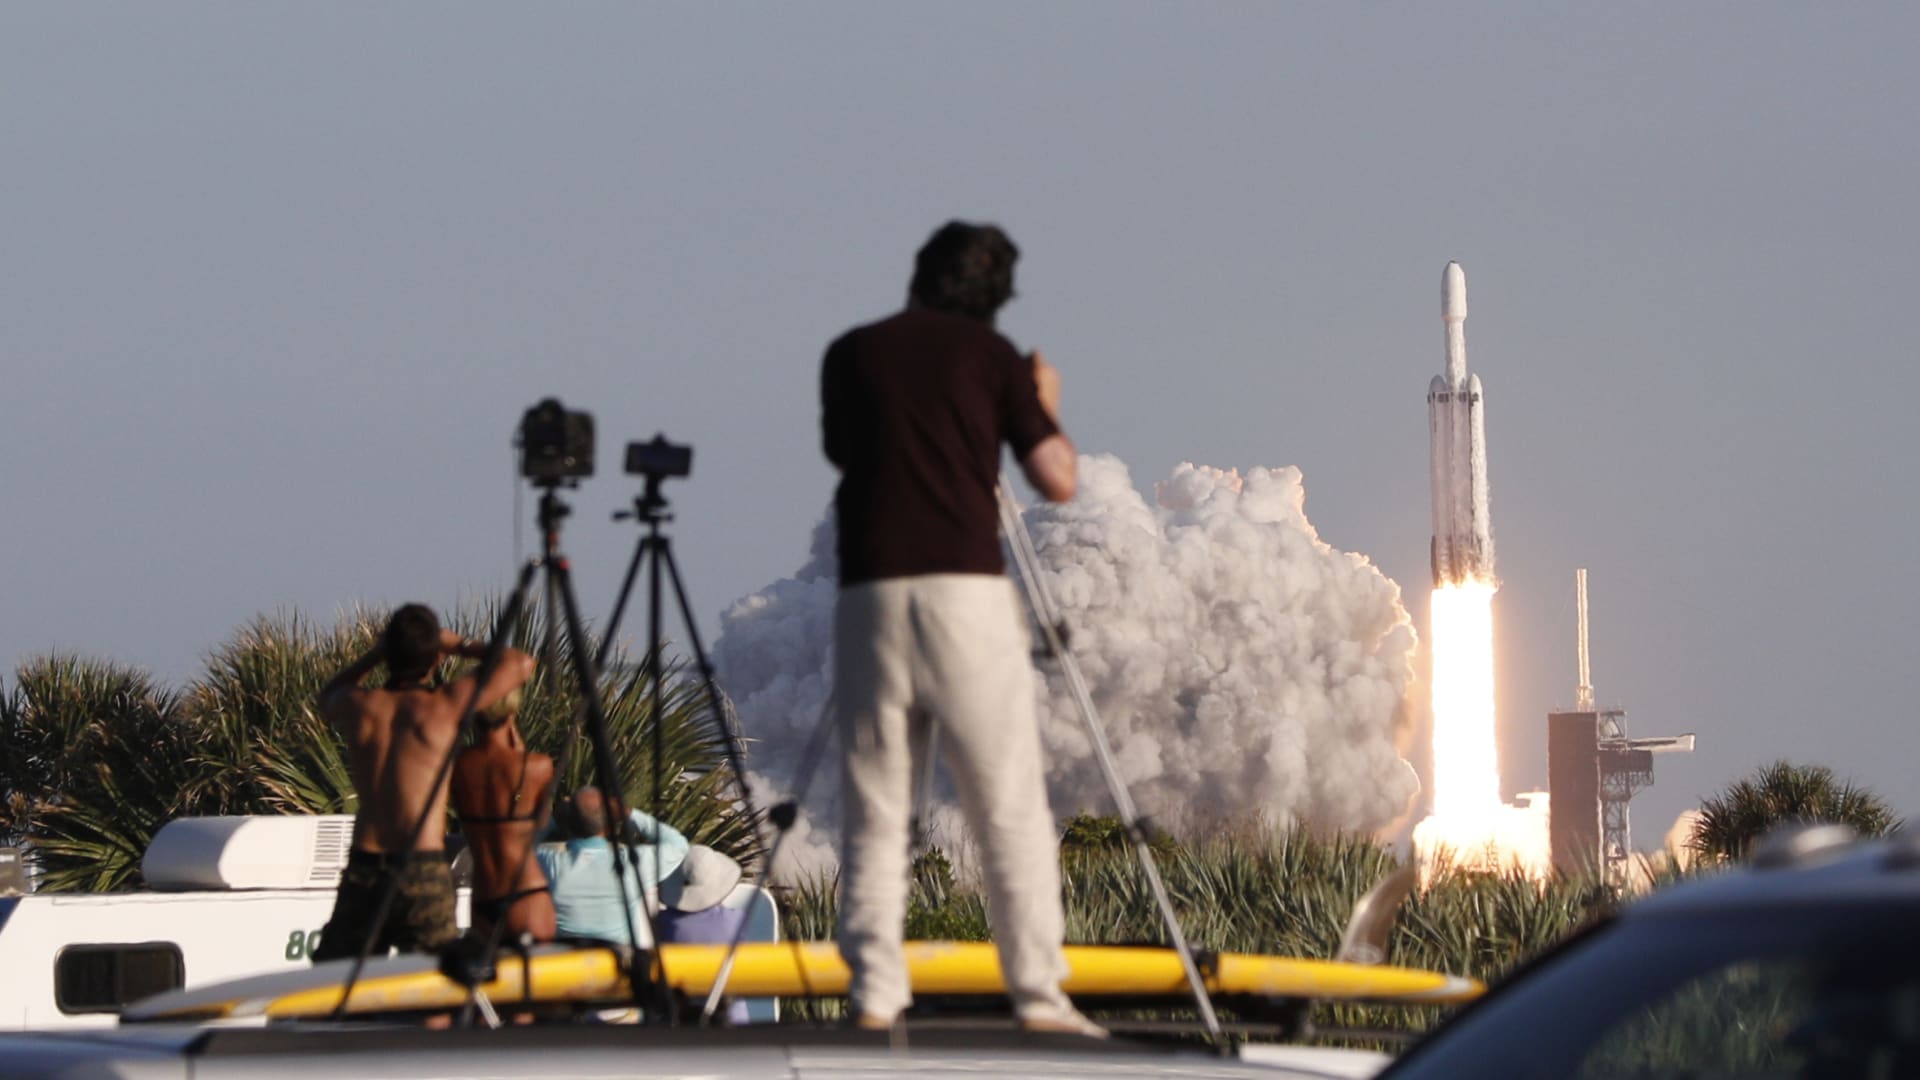 ريانة برناوي.. السعودية تعود إلى المحطة الدولية بـ"أول رائدة فضاء" 